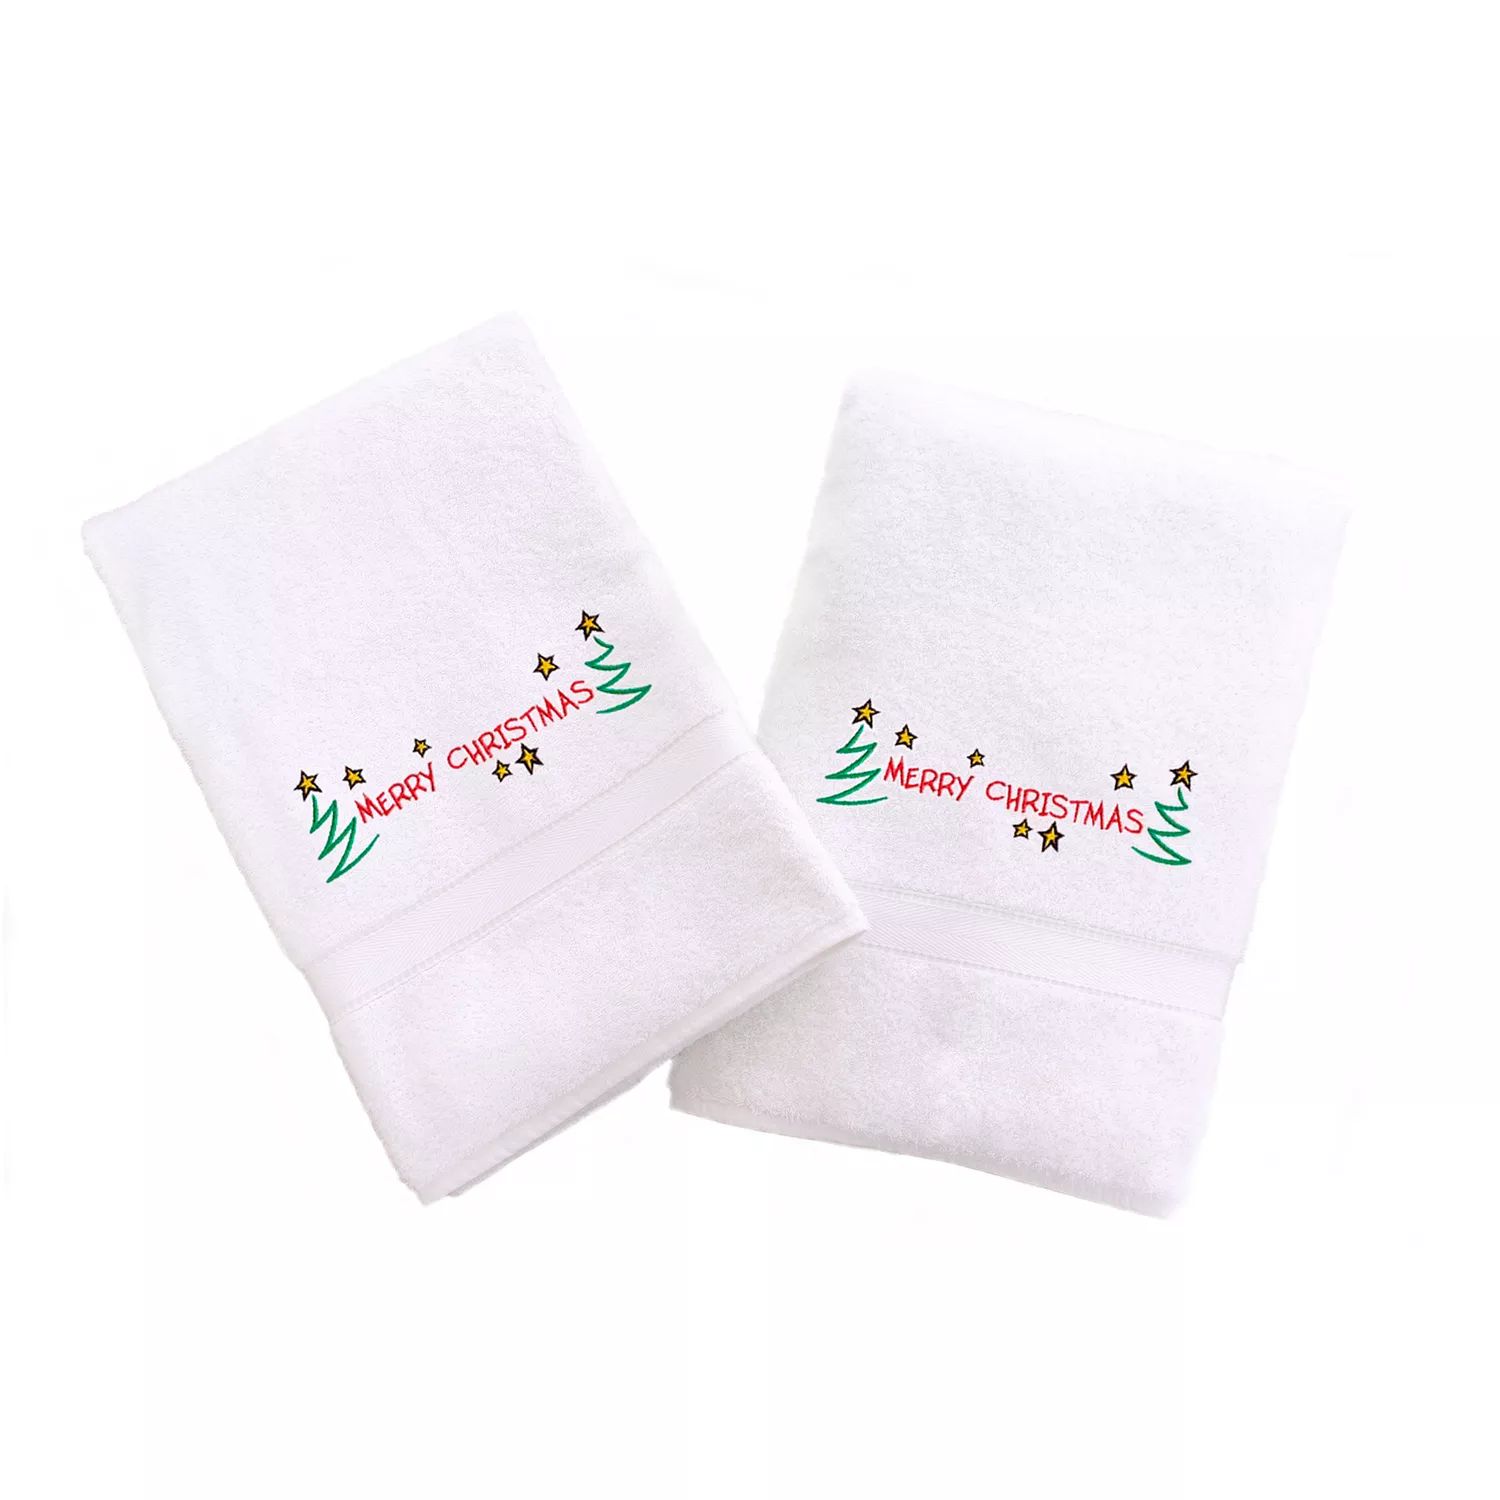 Linum Home Textiles Праздничные полотенца для рук с вышивкой бордюром, 2 упаковки жидкий чехол с блестками merry christmas cow на xiaomi redmi 6a сяоми редми 6а